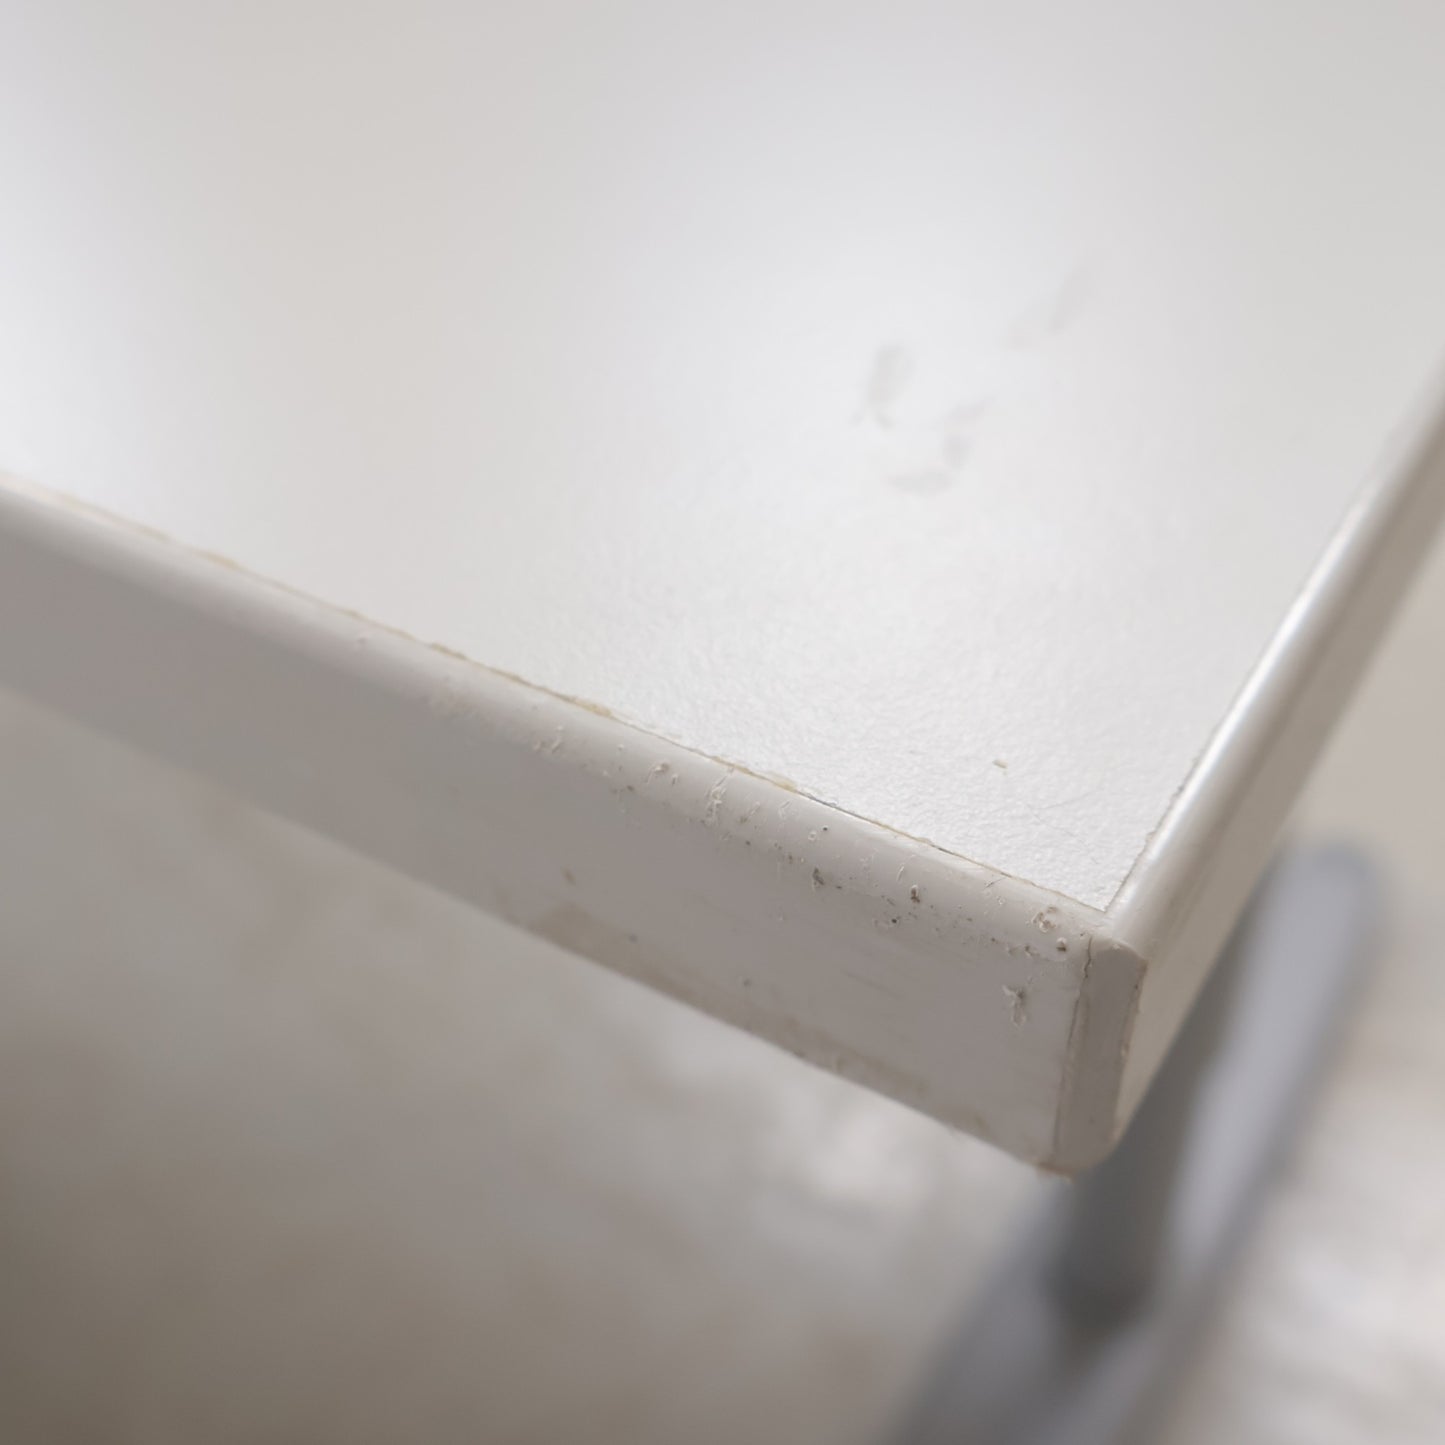 Kvalitetssikret | Skrivebord med justerbar høyde, 160x77